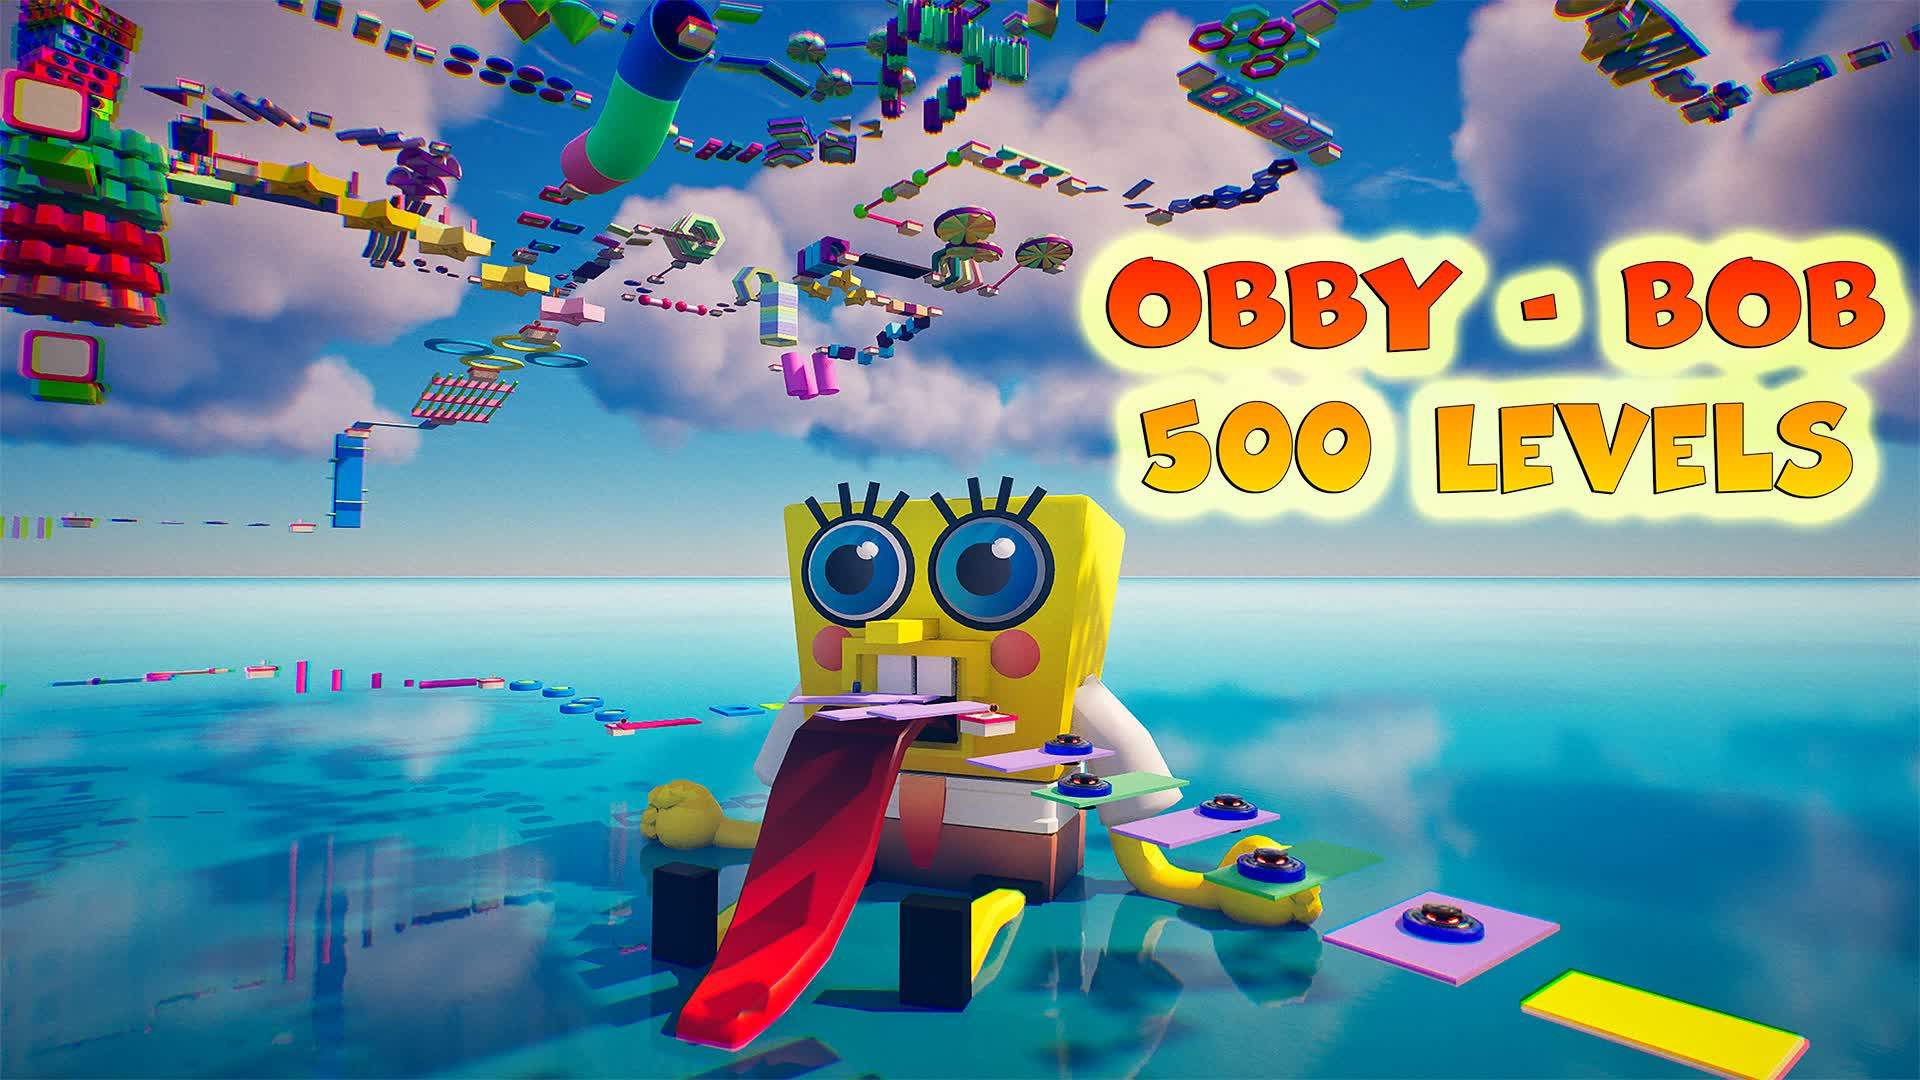 OBBY-BOB 500